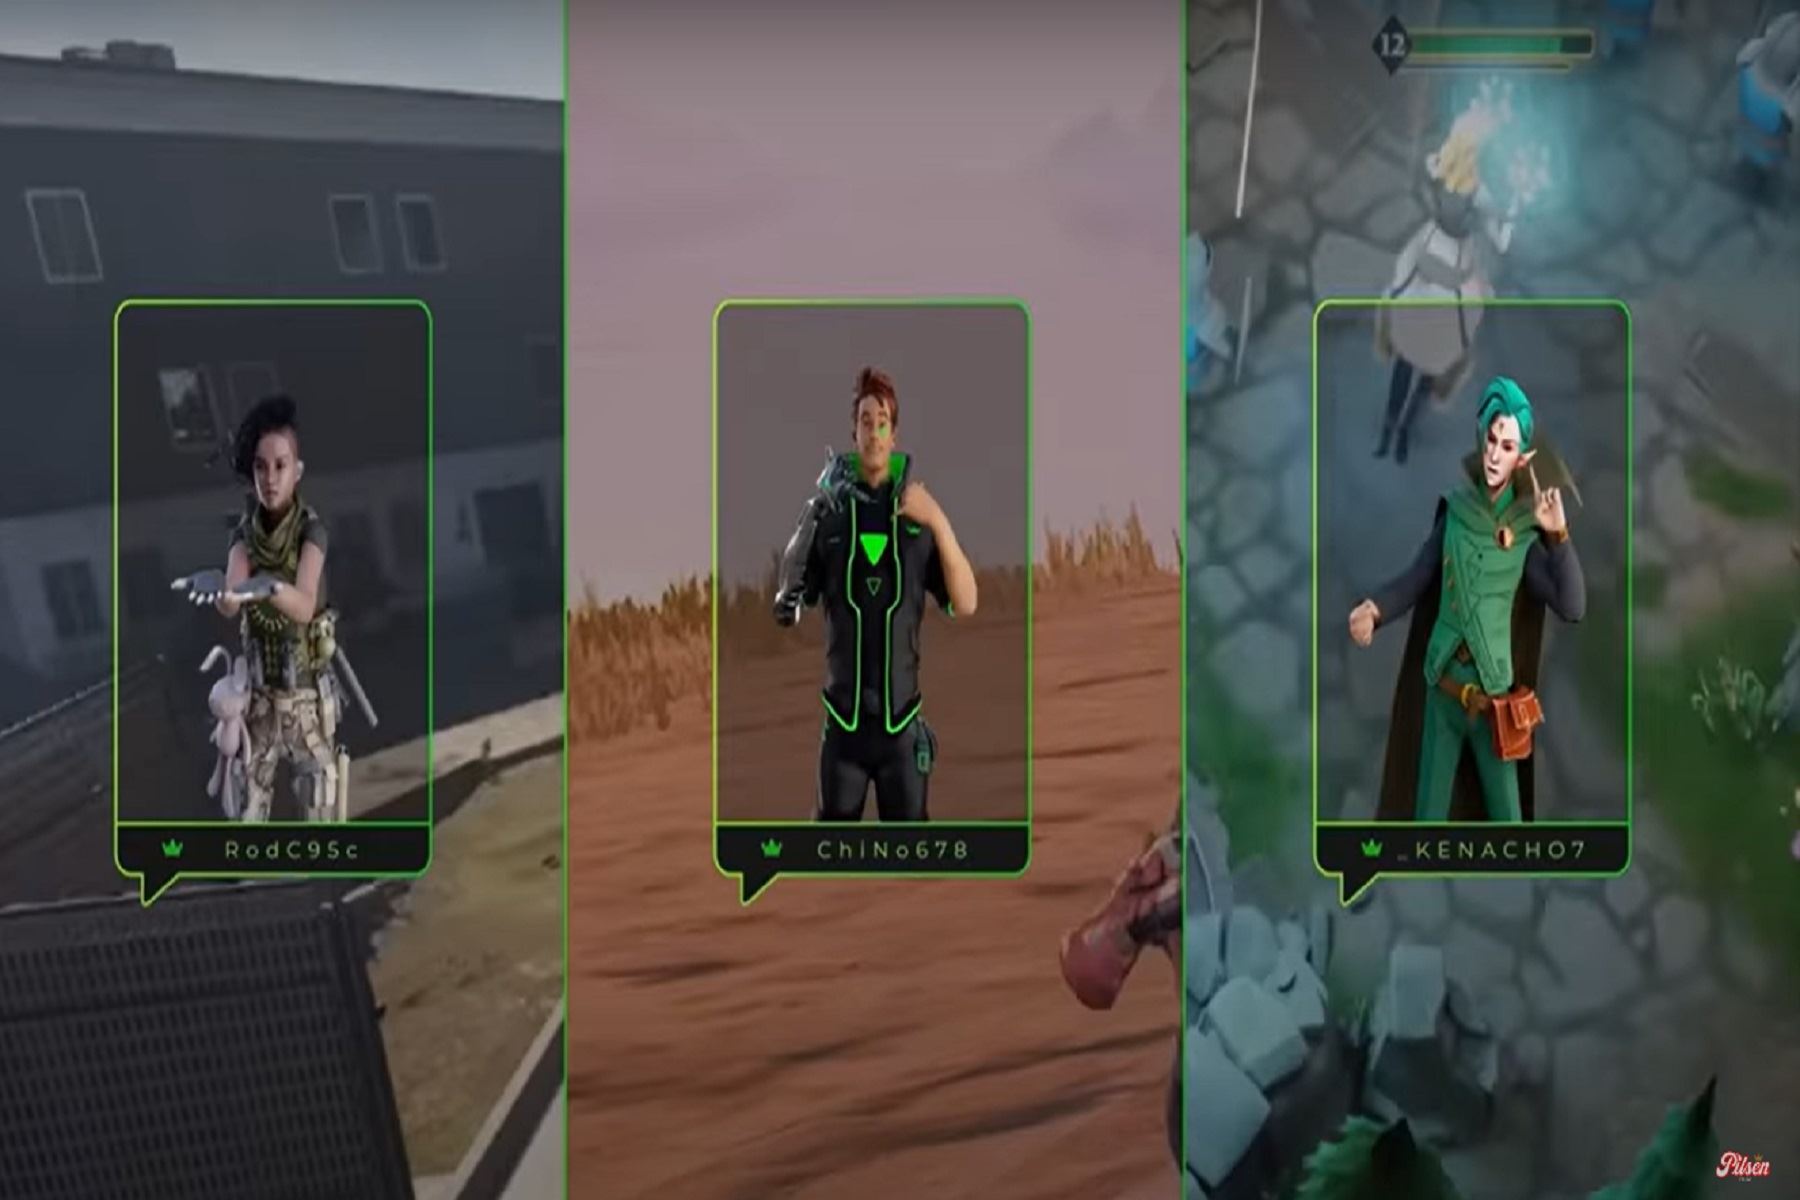 Esta nueva versión incluirá skins renovados de tres avatars inspirados en populares juegos como Call of Duty, League of Legends y Fortnite.